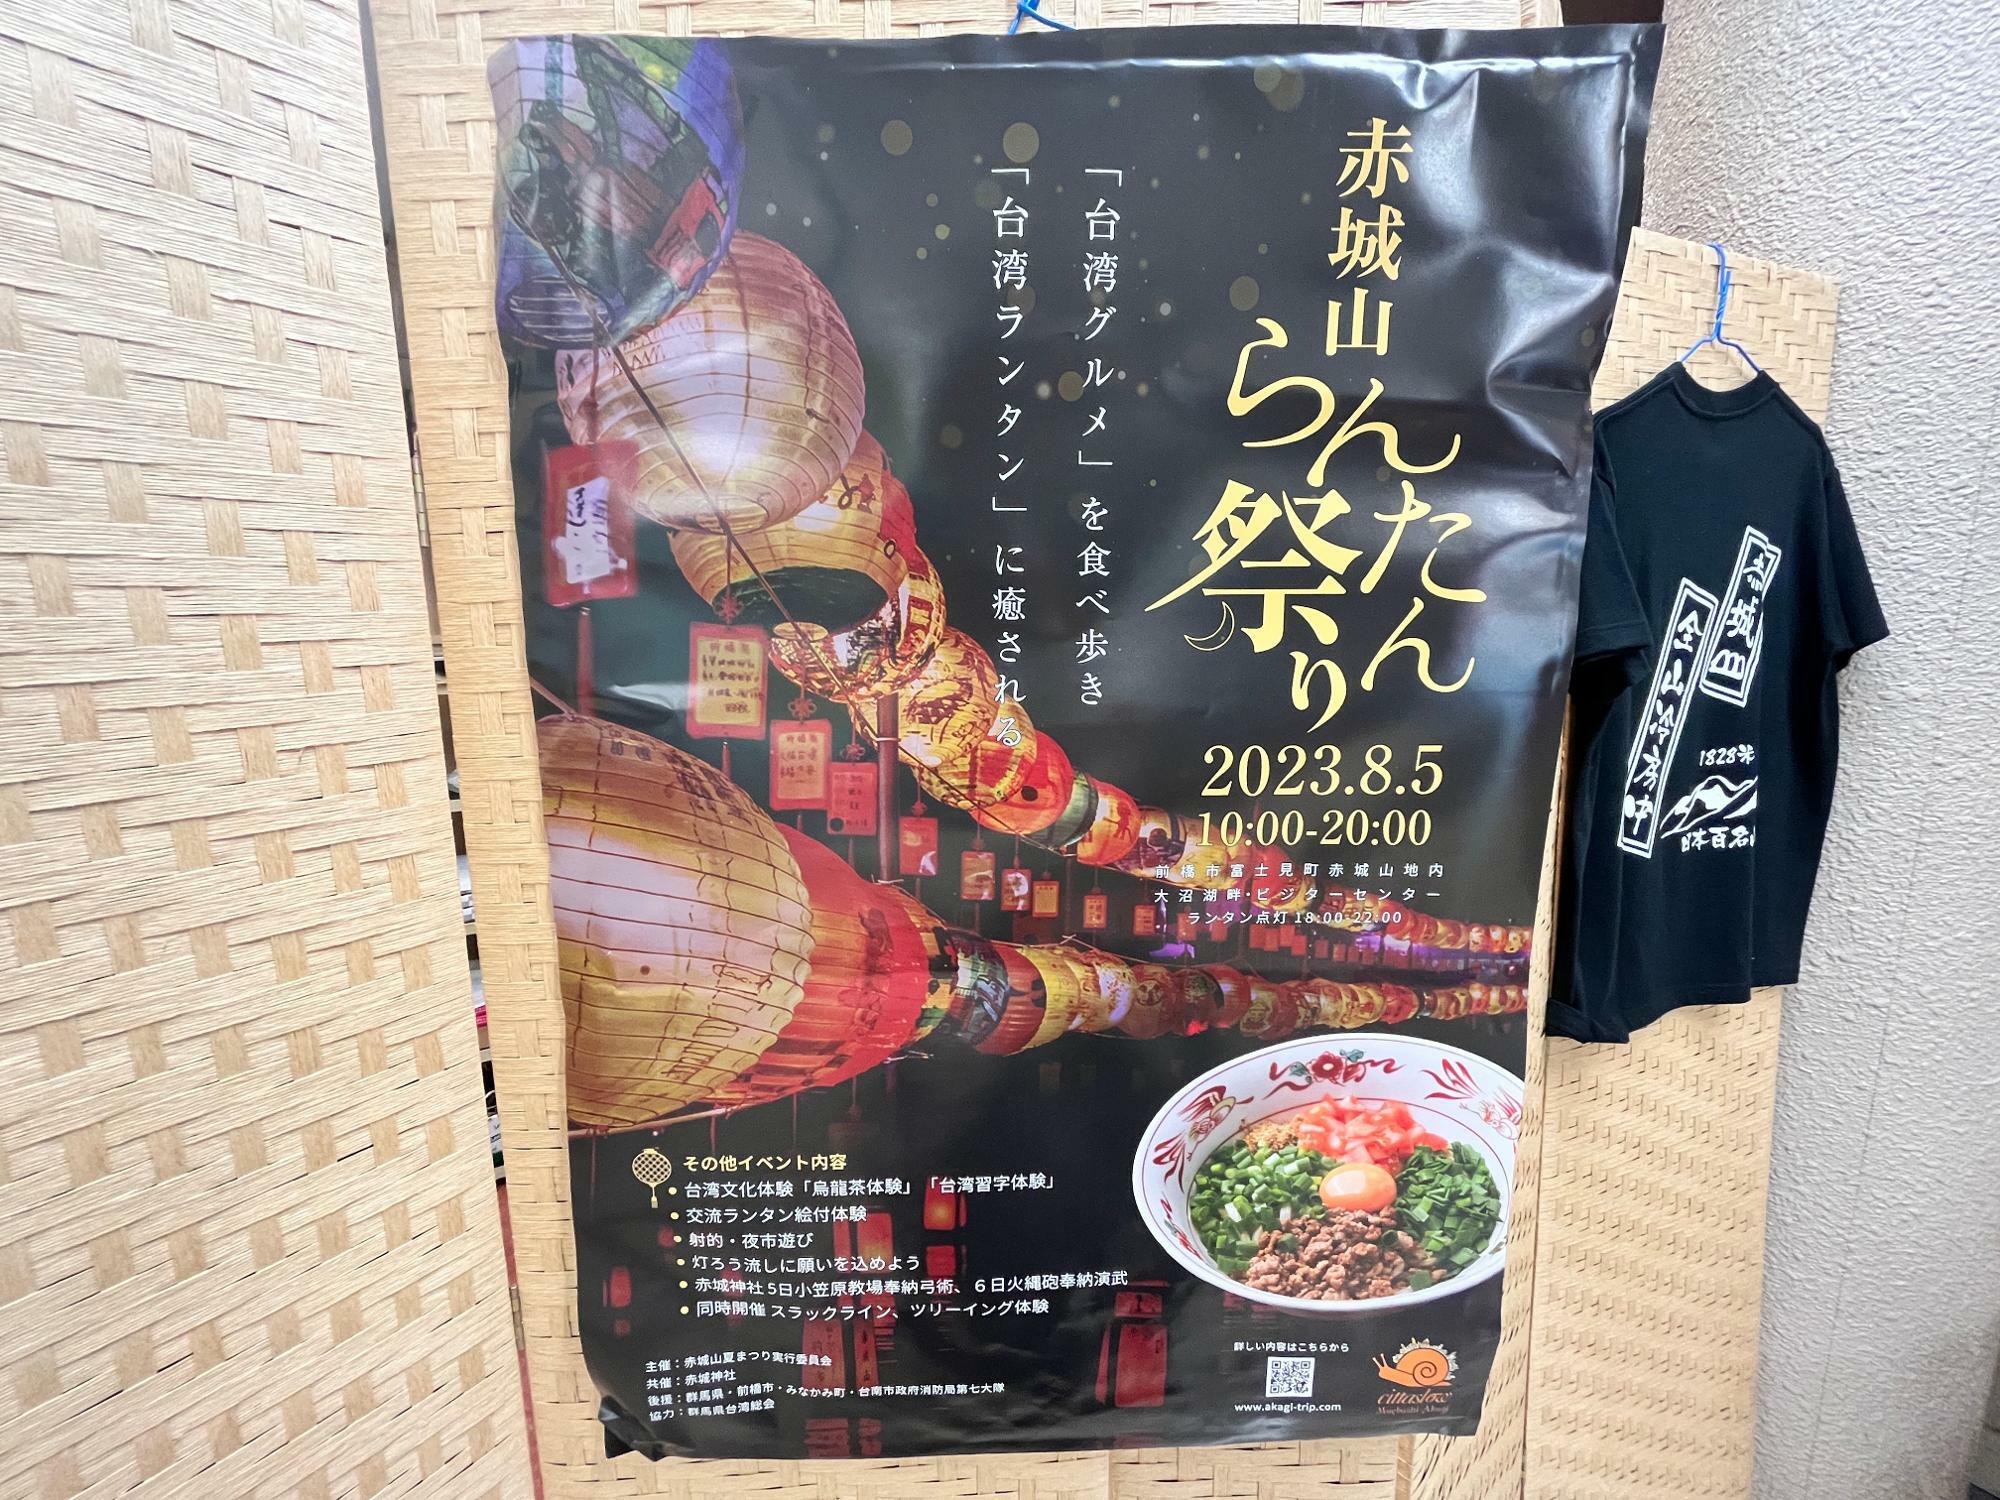 「赤城山らんたん祭り」のポスター